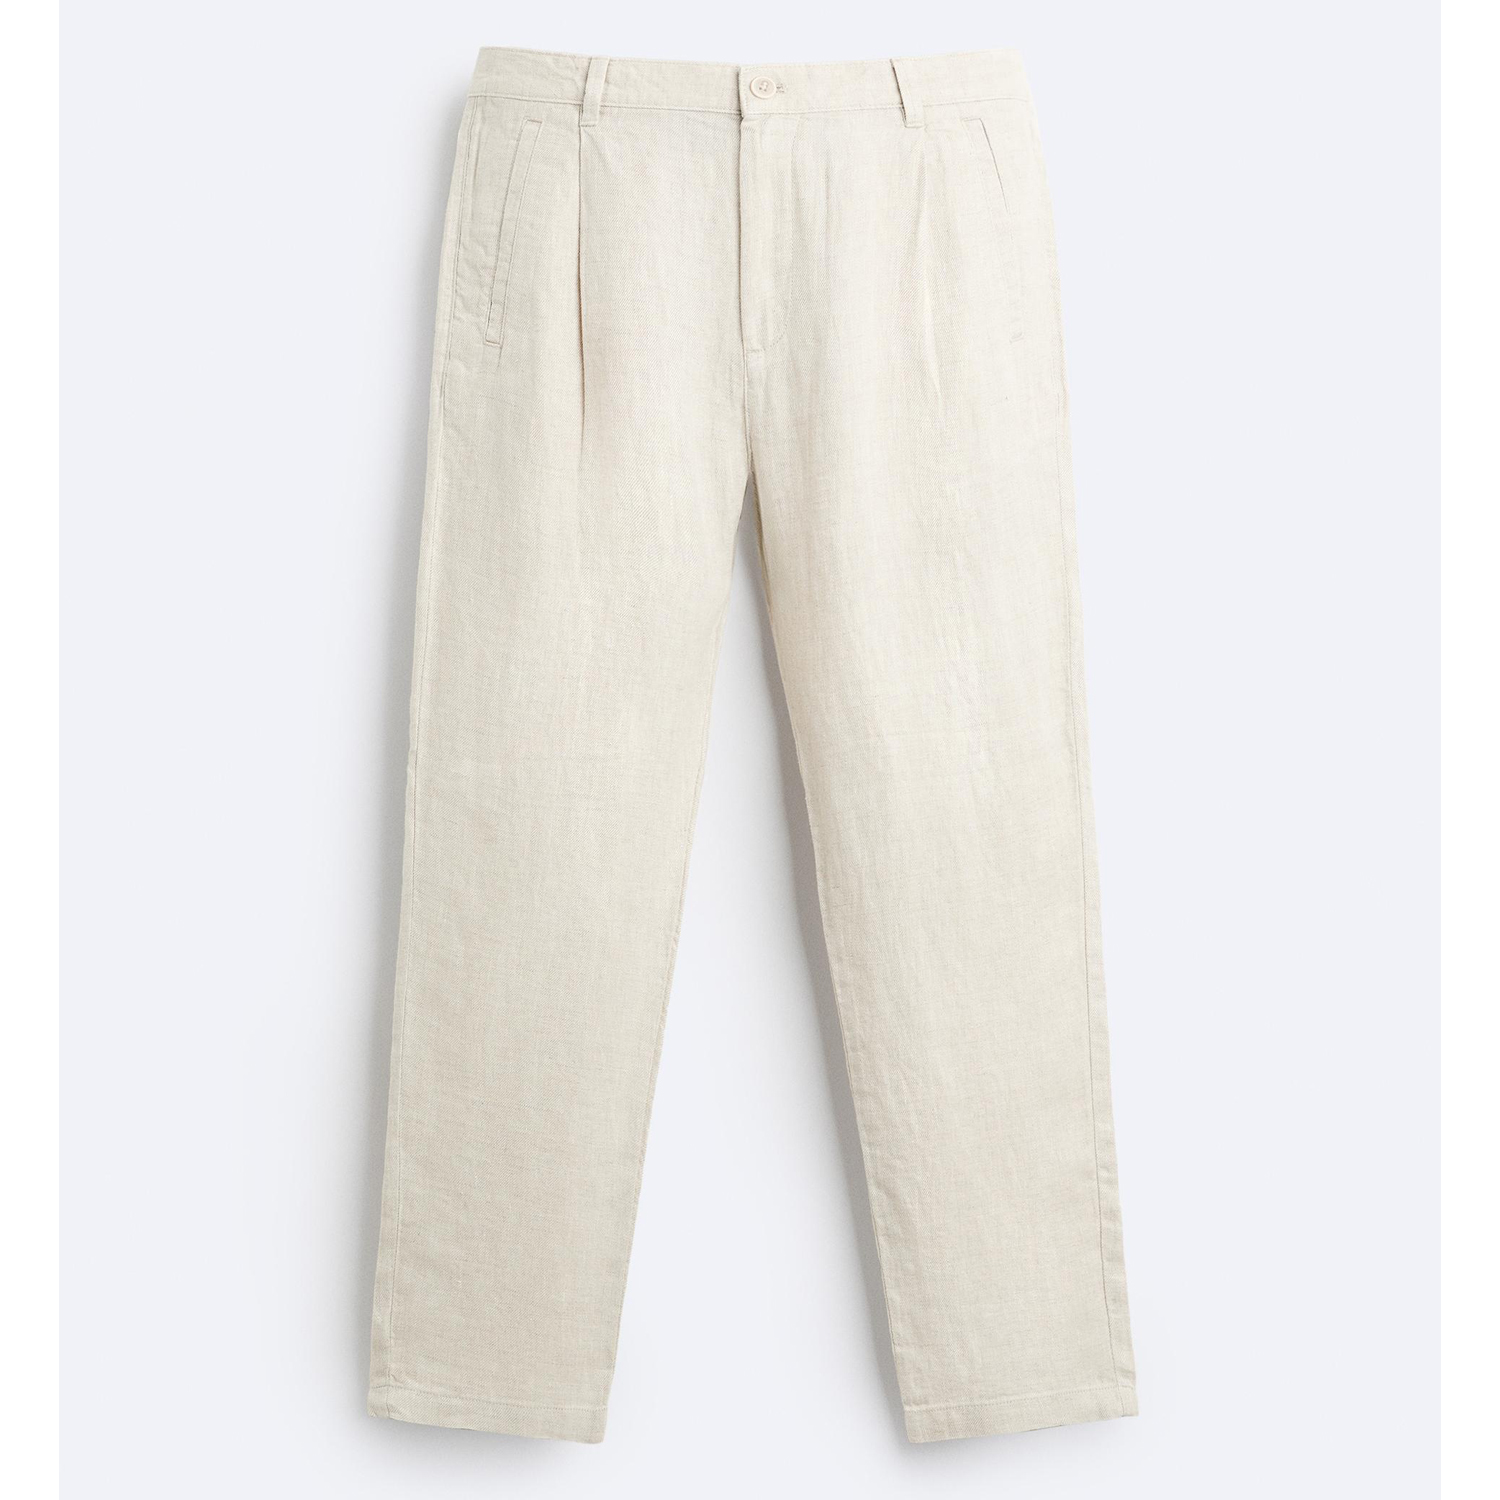 Брюки Zara 100% Linen, светло-бежевый брюки свободного кроя со складками